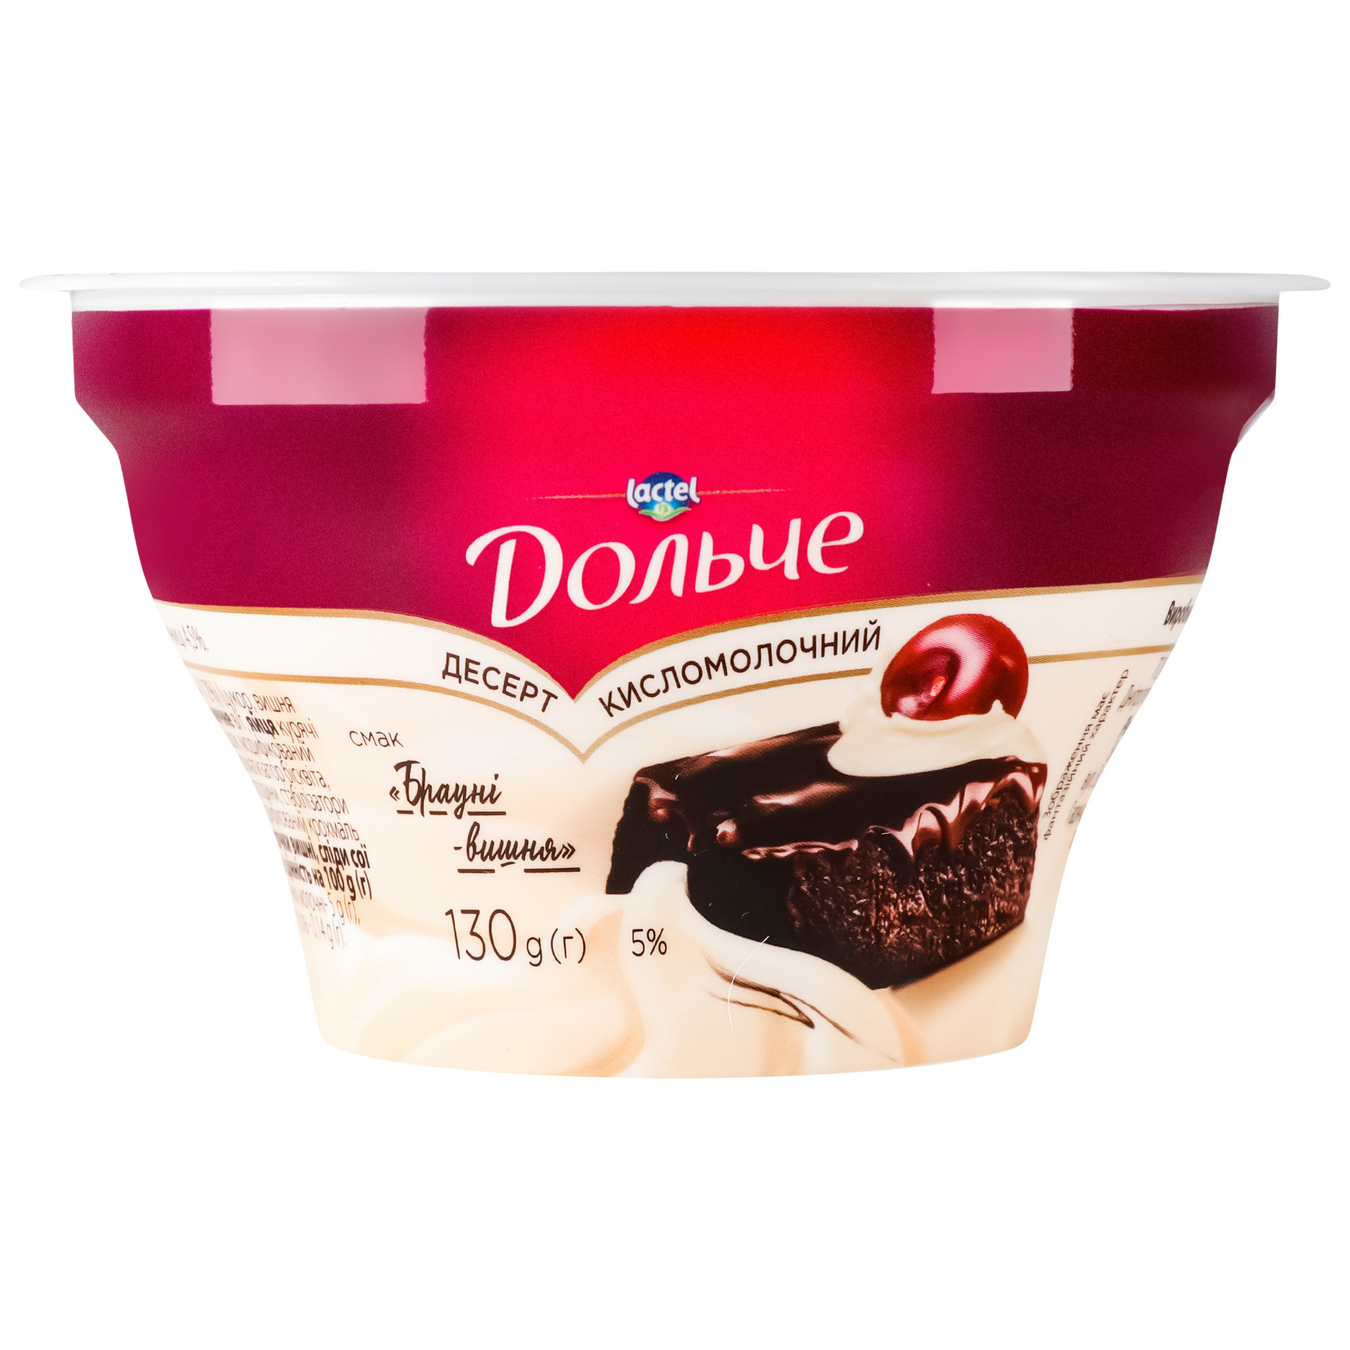 Dessert Dolche Brownie-cherry sour milk 5% 130g